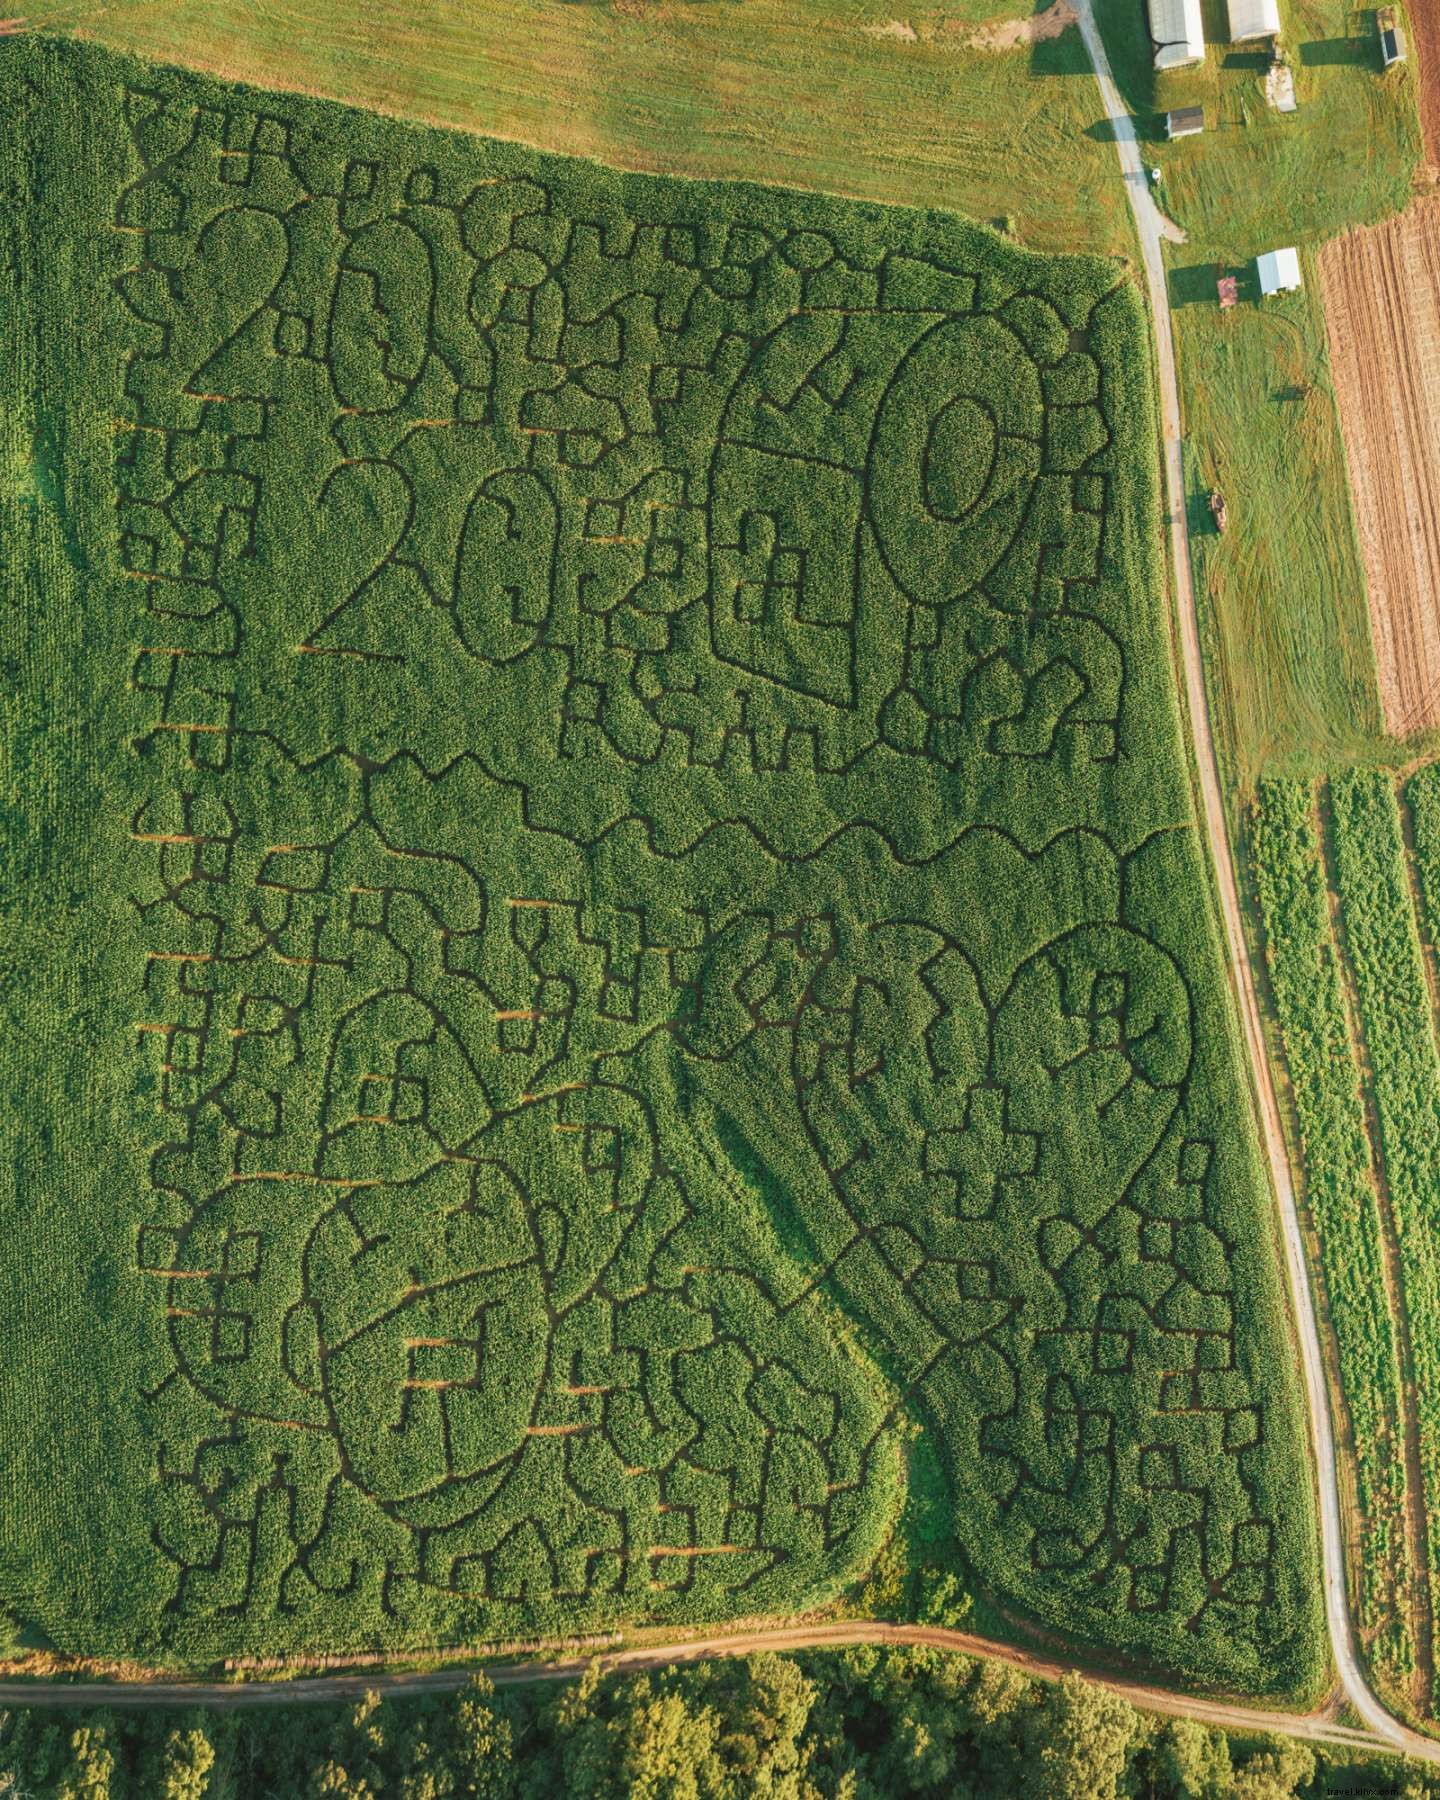 Non tutti coloro che vagano sono persi:oltre 20 labirinti di mais e zone di zucca da visitare questo autunno 